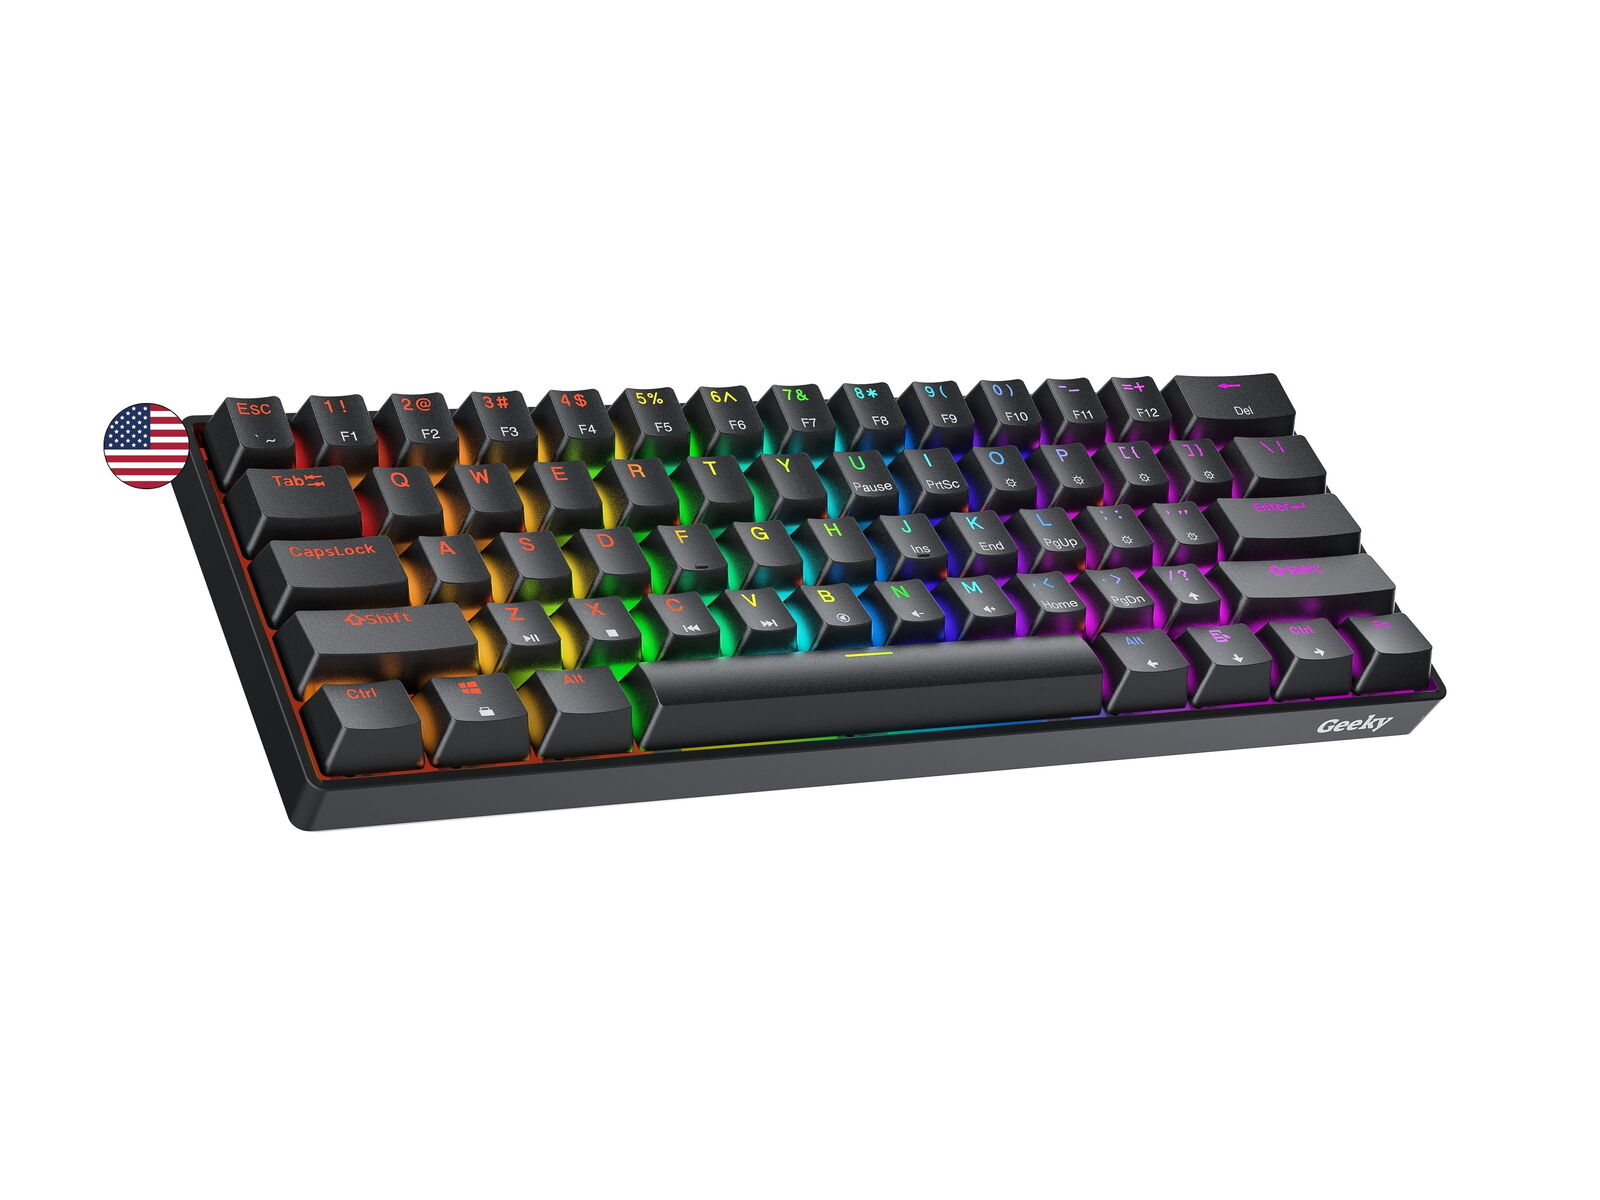 Geeky GK61 SE 60% Mechanical Gaming Keyboard61 Keys Multi Color RGB LED Backlit